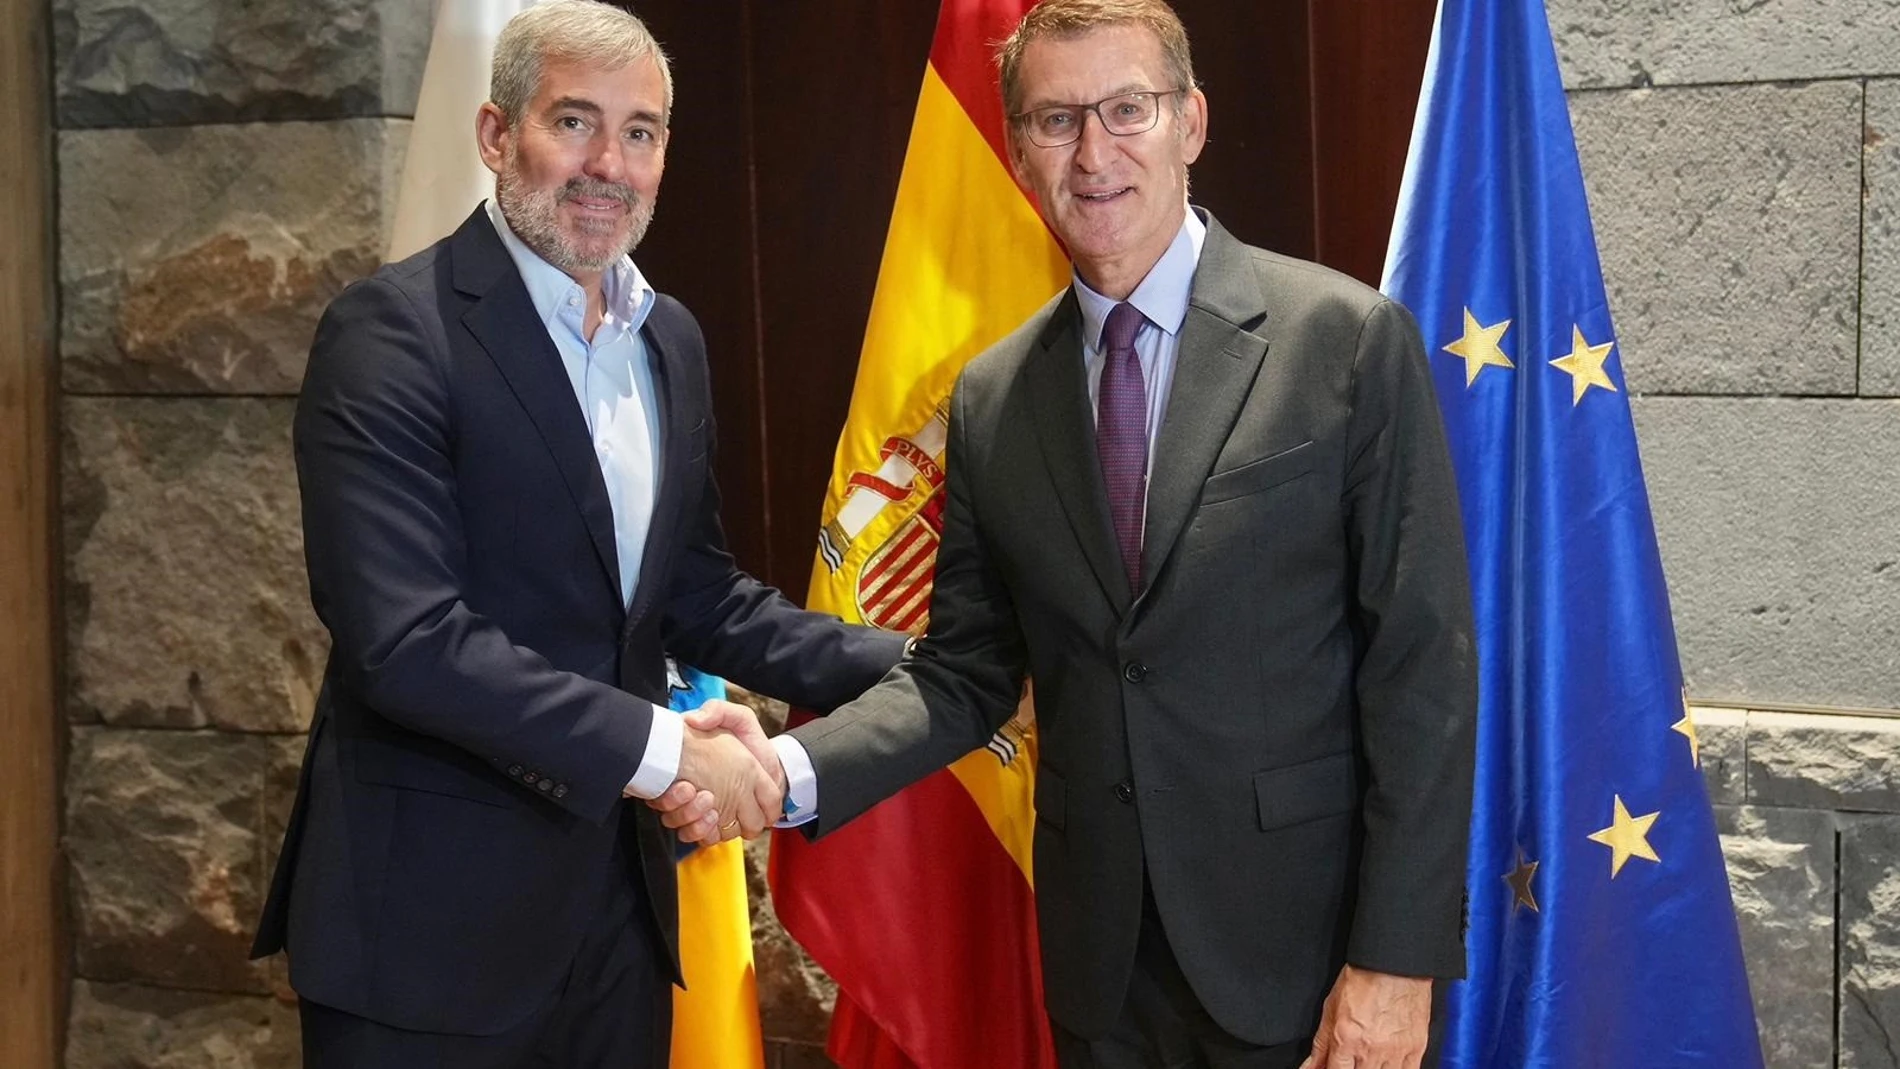 AV.- Feijóo y Clavijo apuntalan el apoyo del PP a una 'agenda canaria' que persigue la "igualdad" entre los españoles